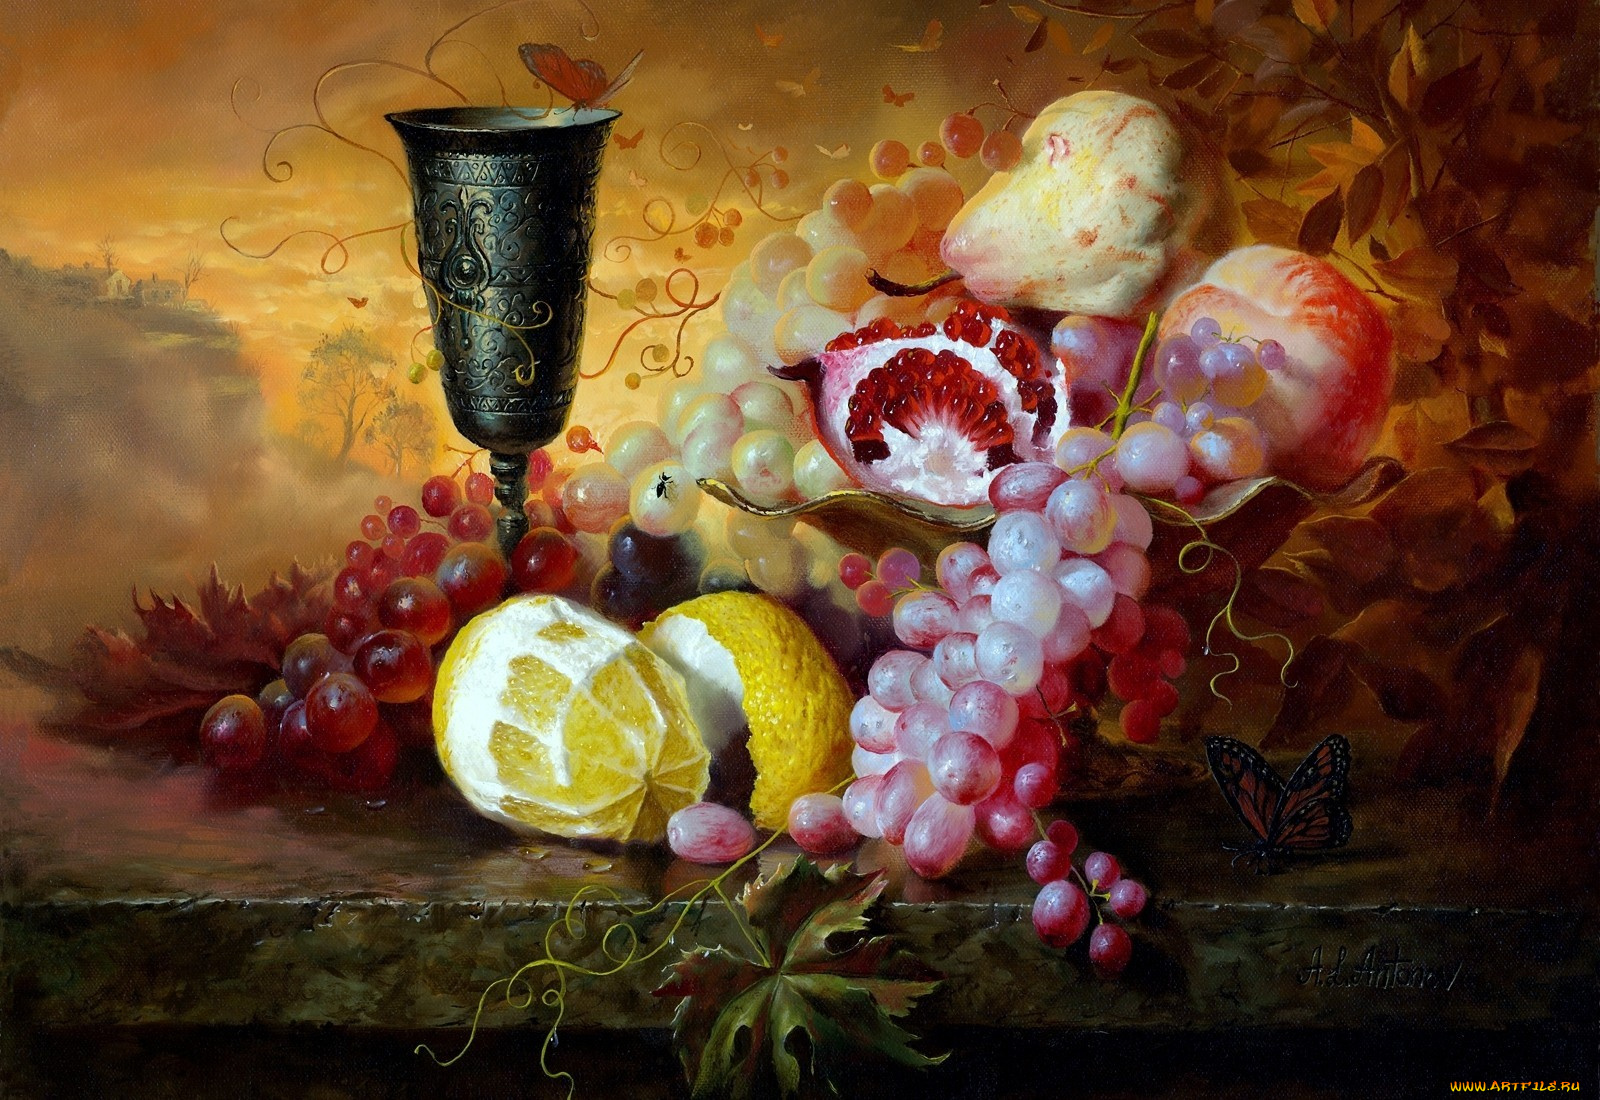 алексей, антонов, рисованные, бокал, бабочки, лимон, гранат, виноград, груша, персик